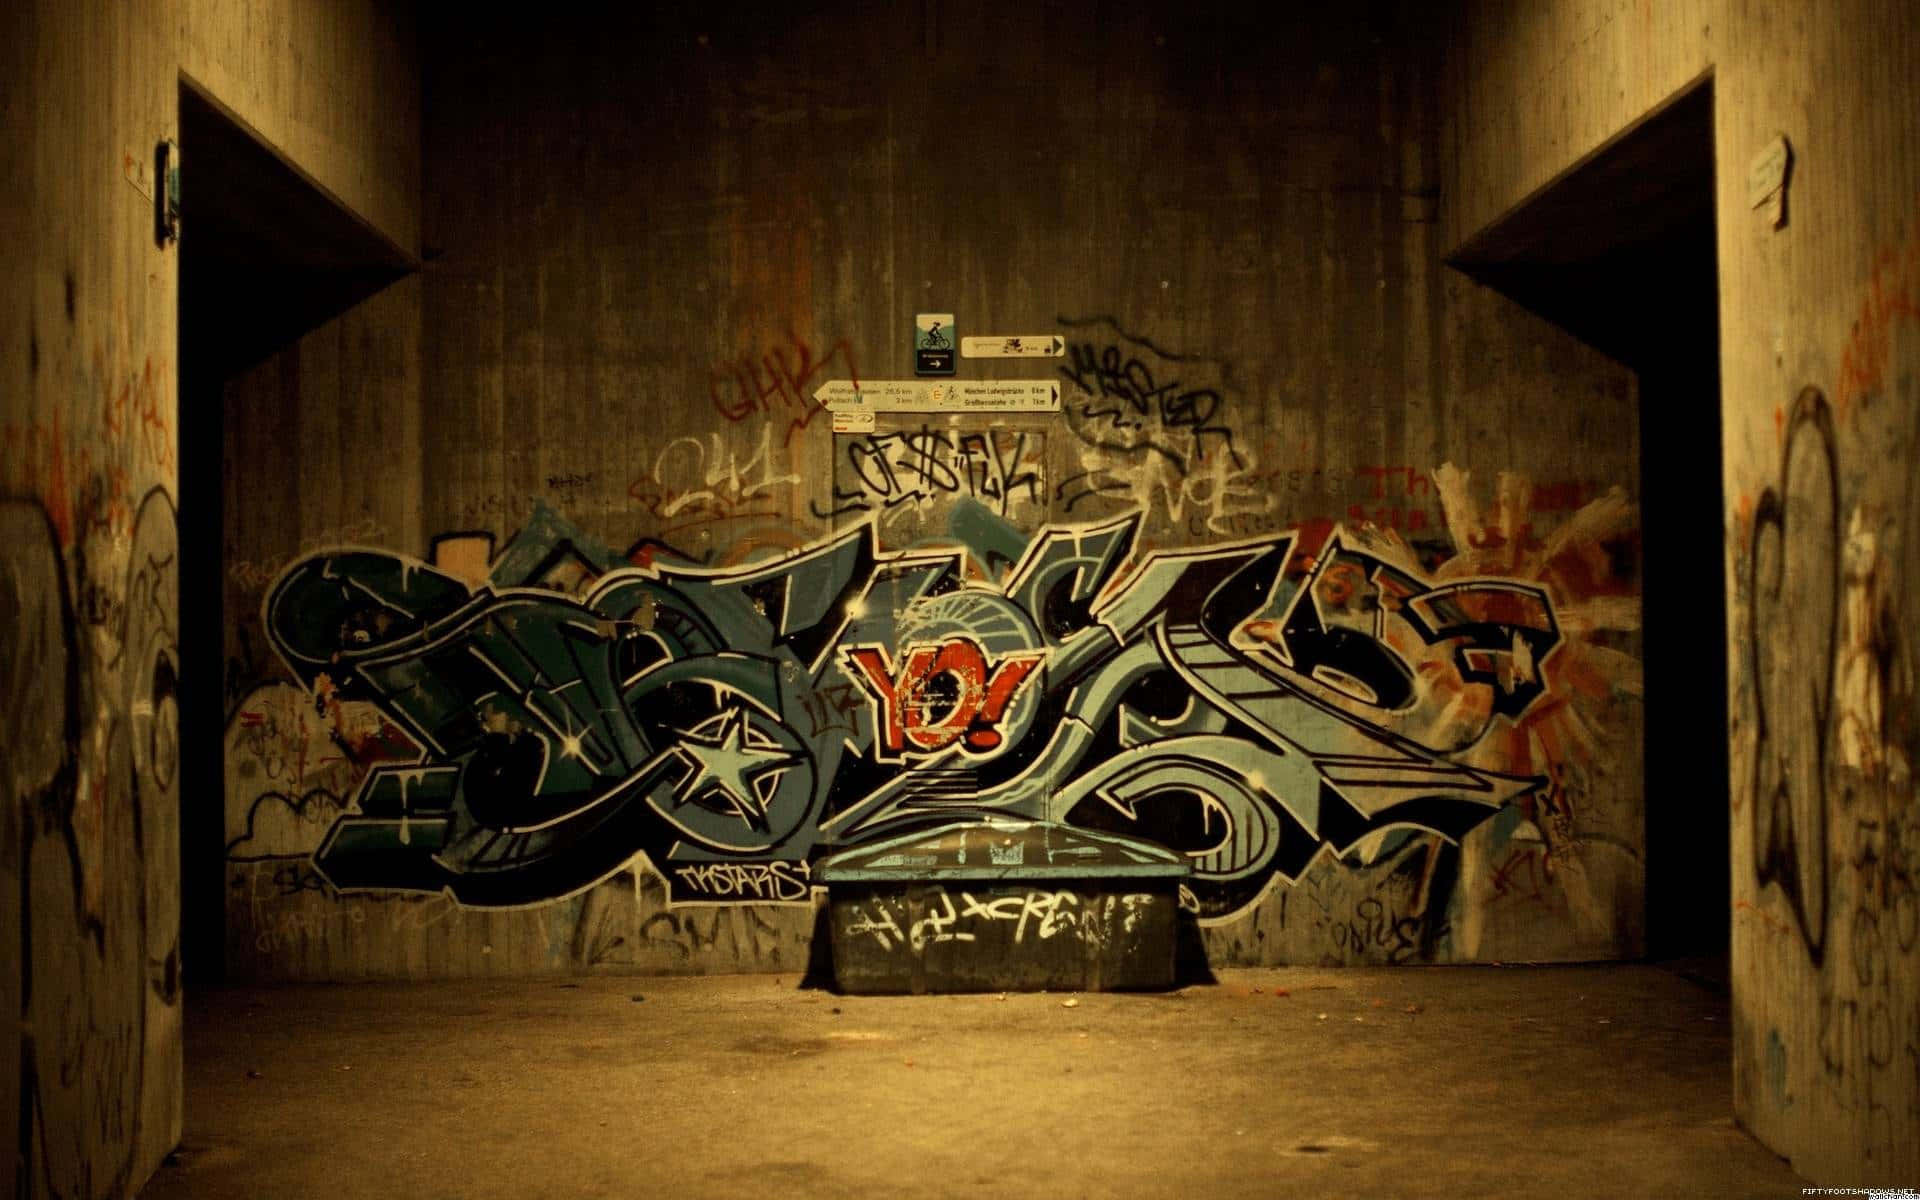 Graffitibakgrund.